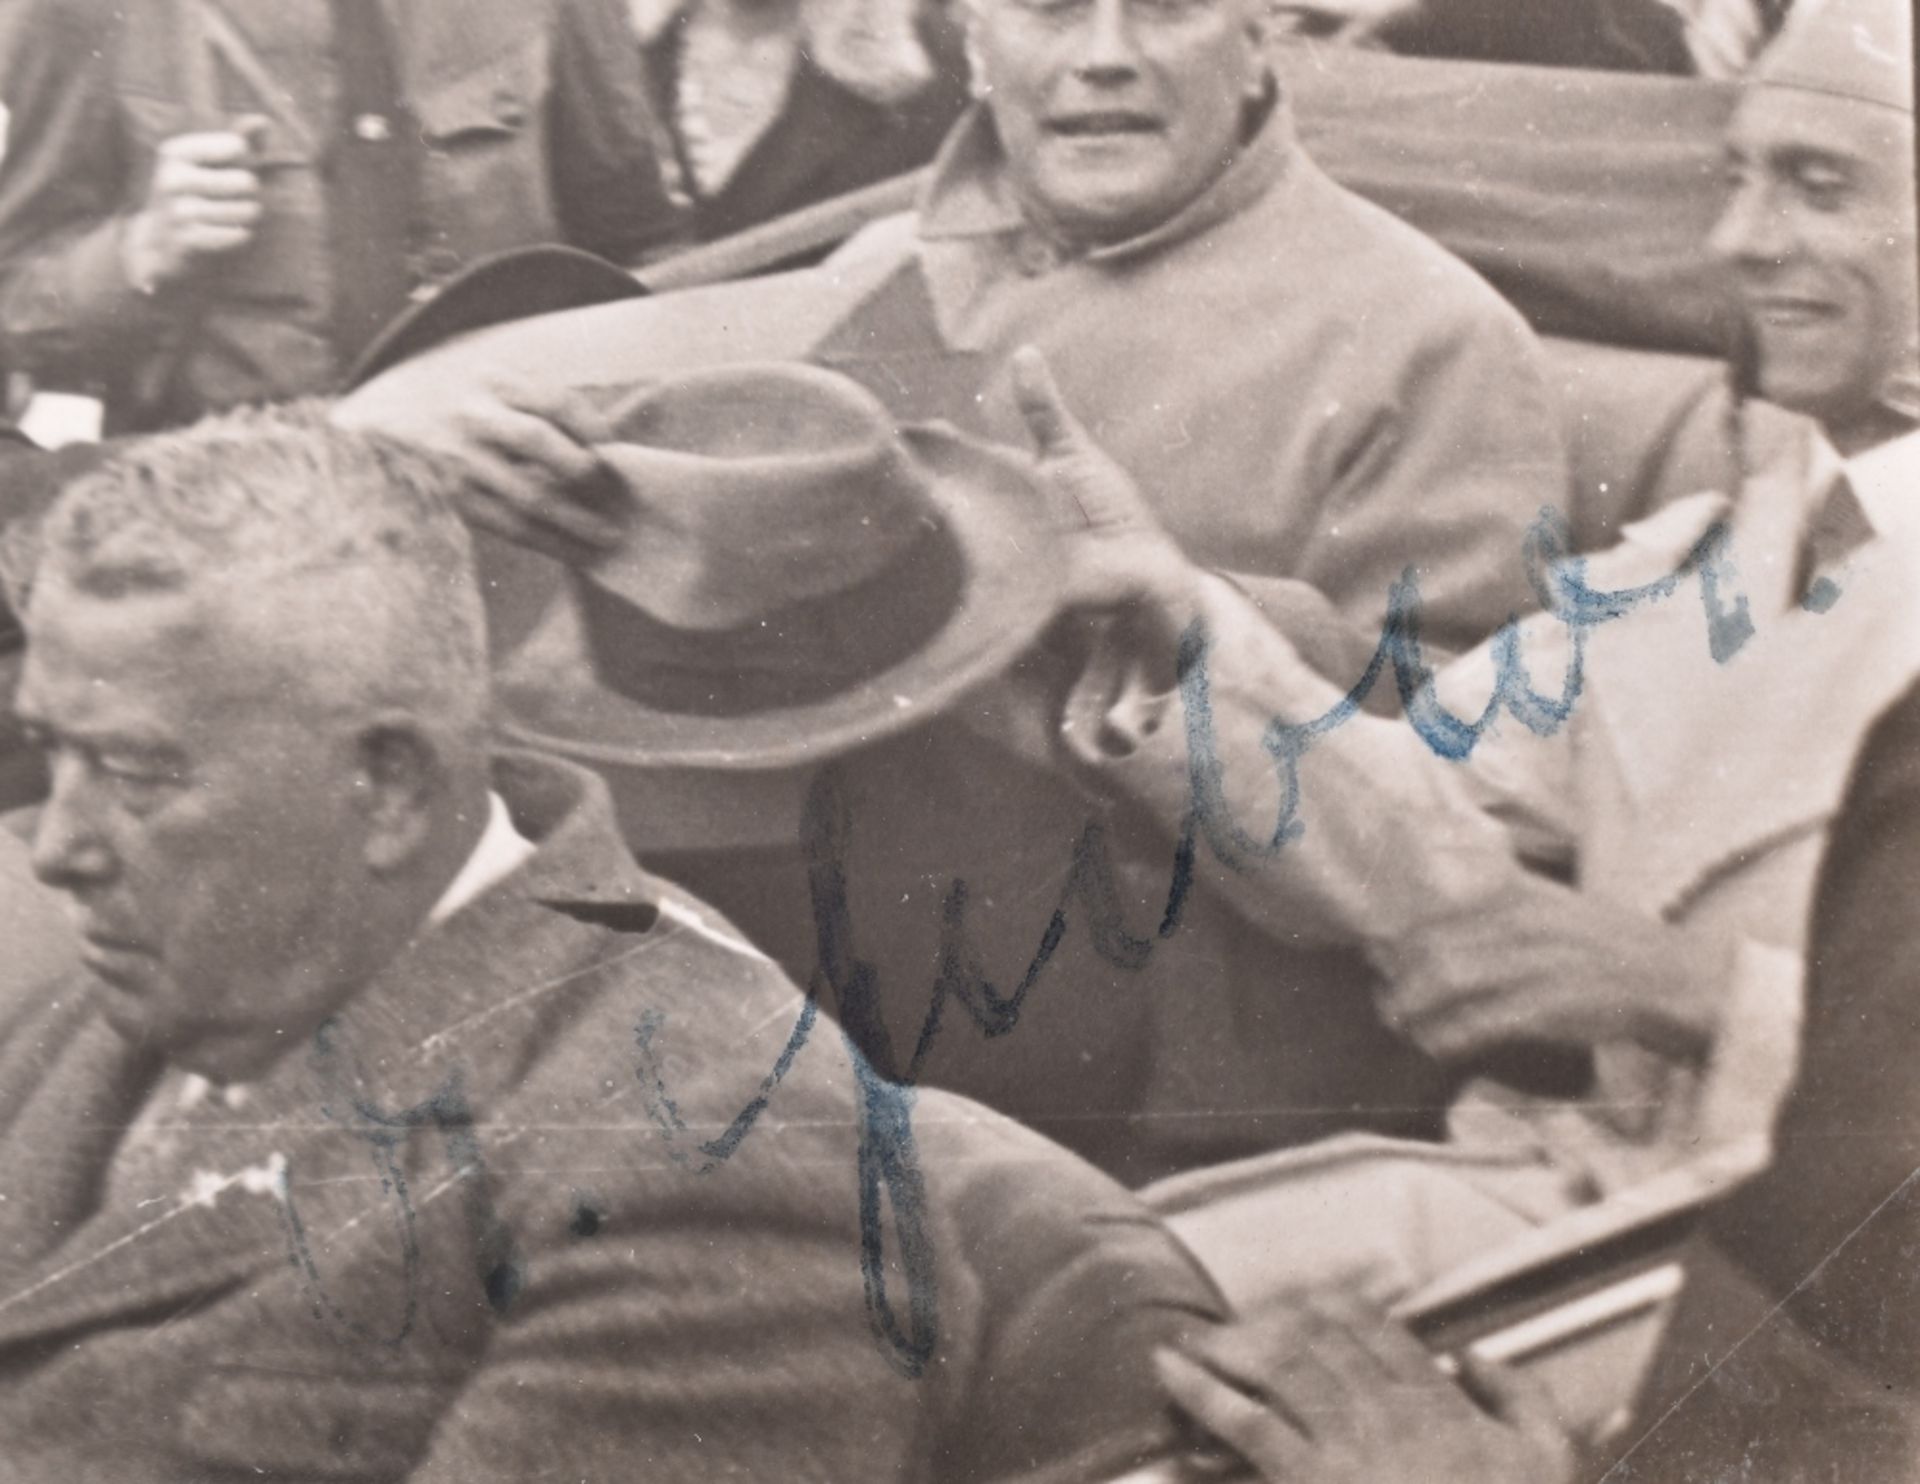 Herman Goering Family Archive – Signed Photographs of Adolf Hitler and Dr Joseph Goebbels - Bild 4 aus 7